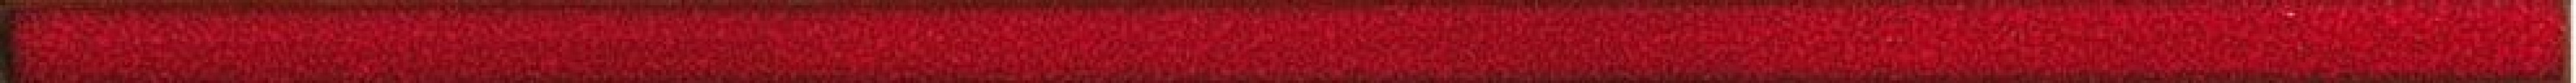 Бордюр Rako Fashion красный 2x60 DDRSN971